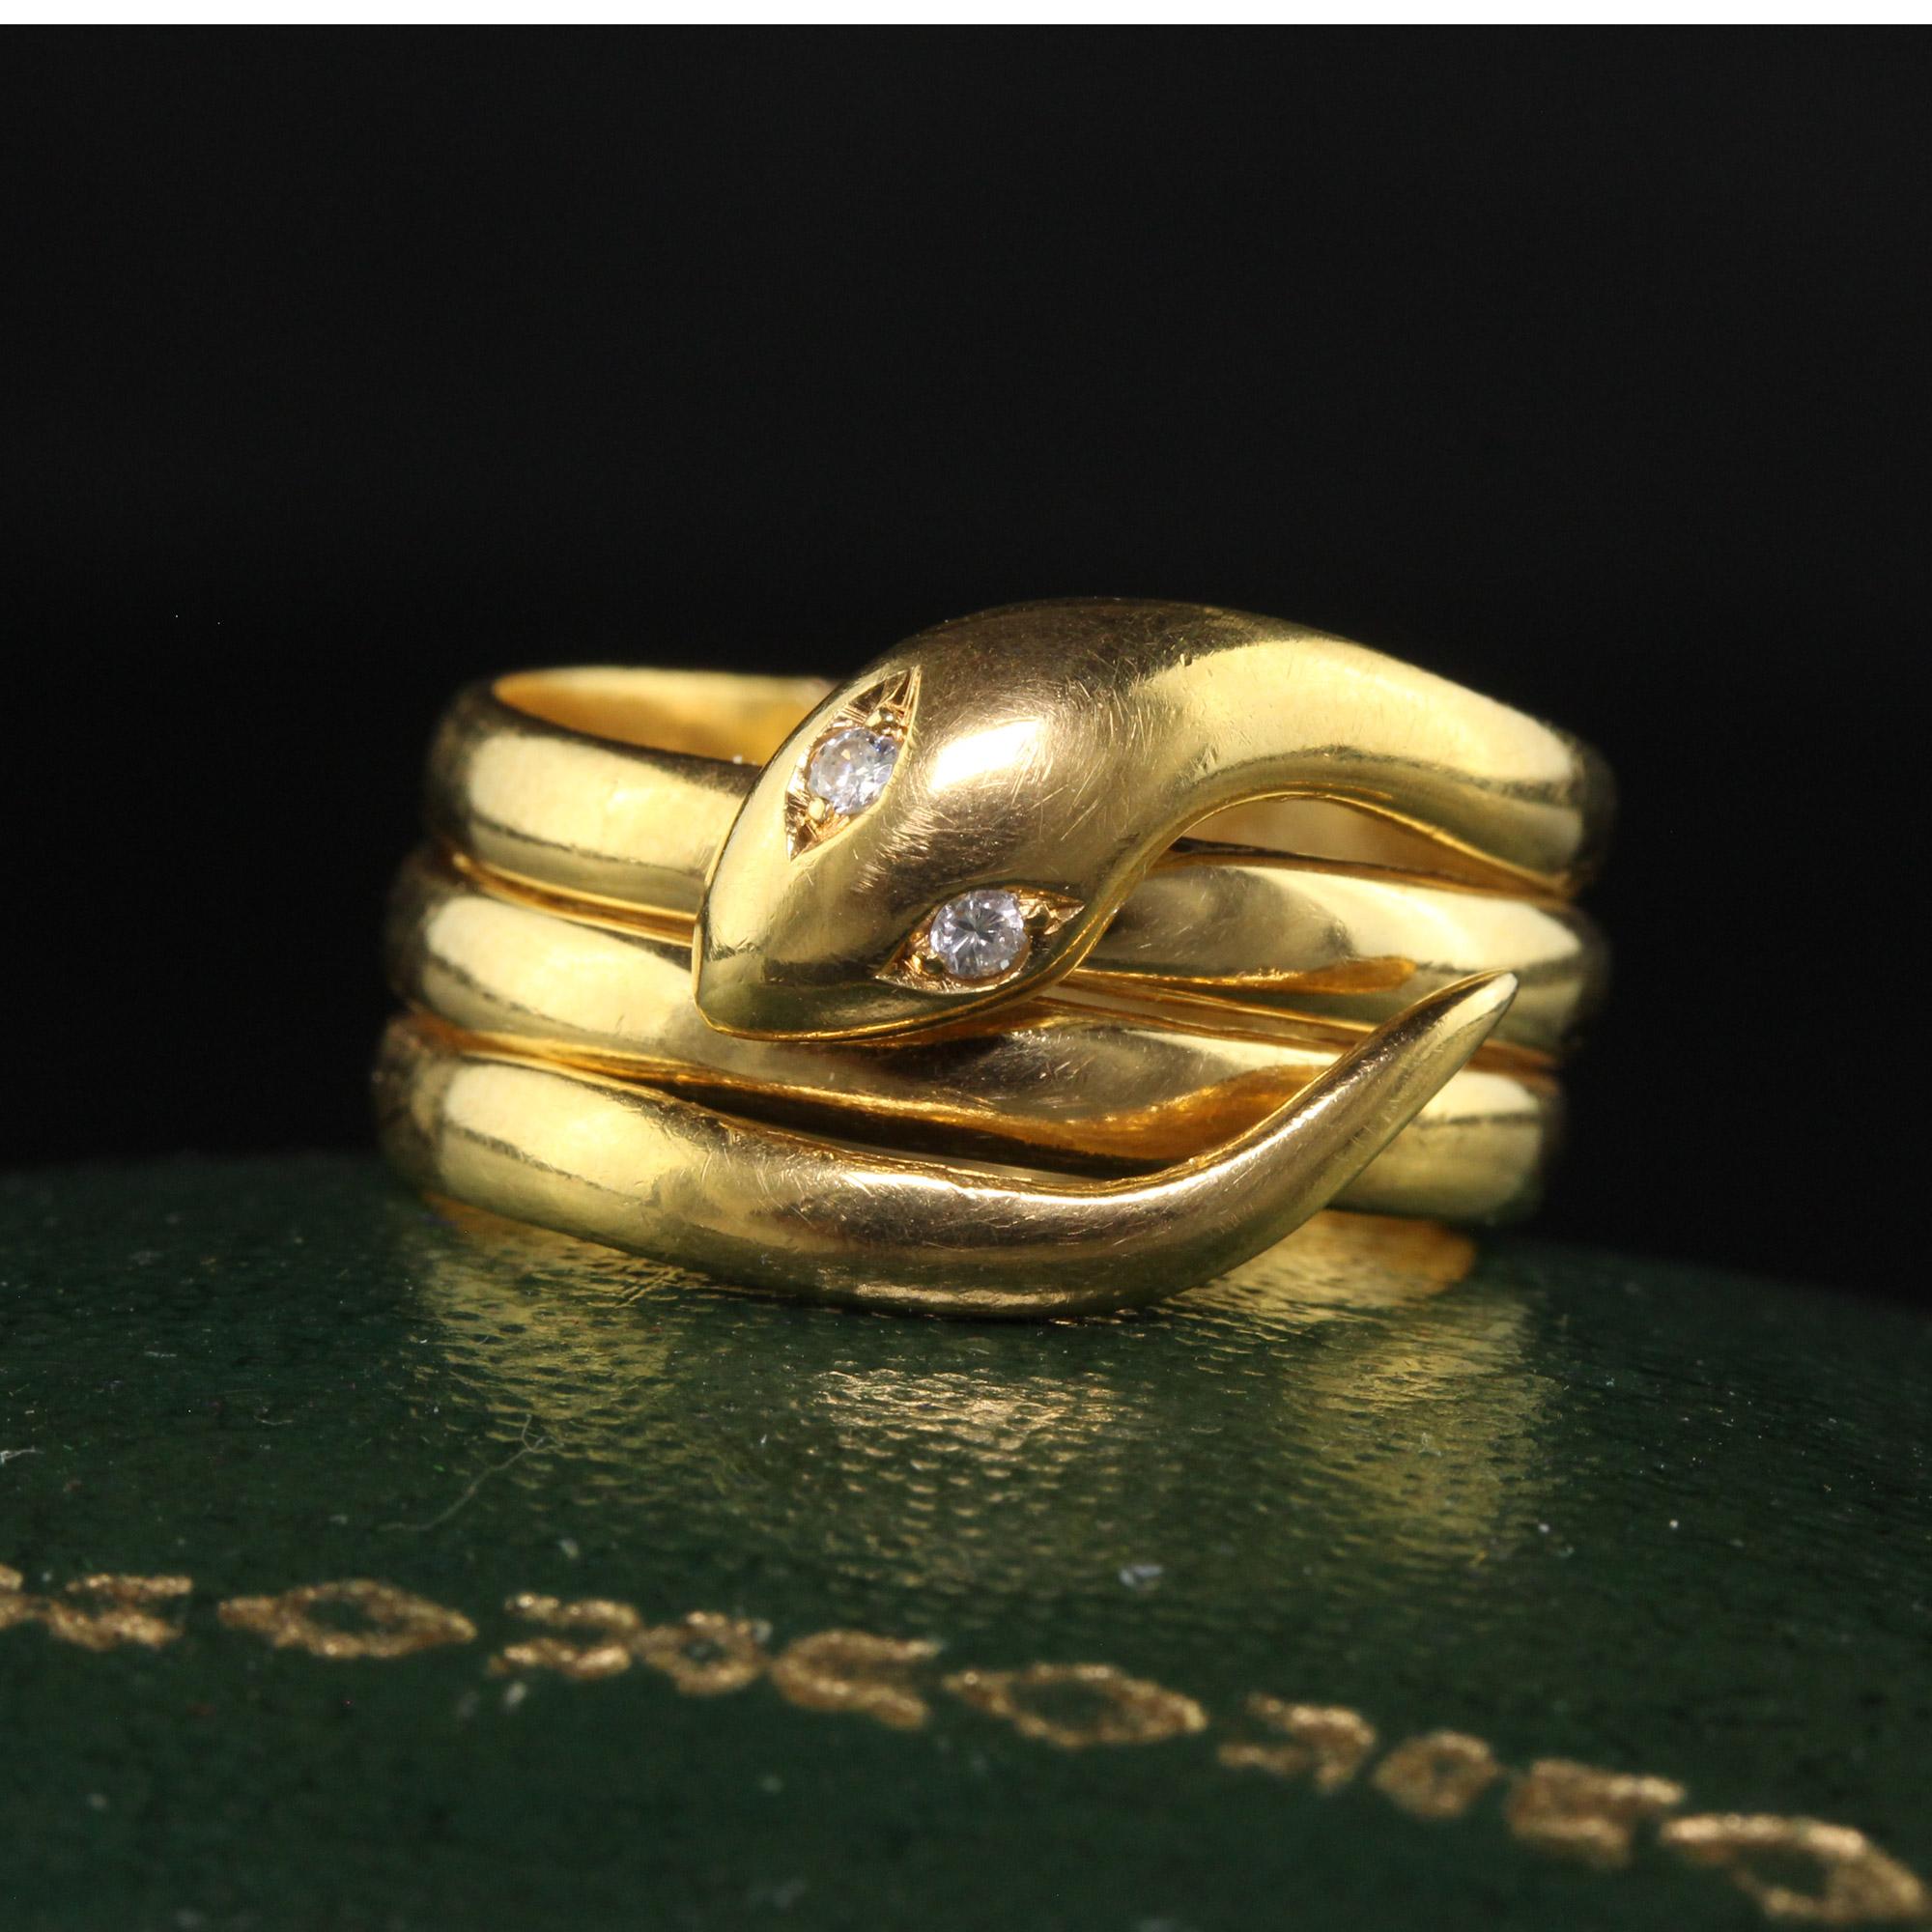 Magnifique bague victorienne ancienne en or jaune 18 carats avec diamant et serpentin. Cette magnifique bague serpent victorienne est réalisée en or jaune 18 carats. Les yeux du serpent sont des diamants et la bague est en bon état. L'anneau se